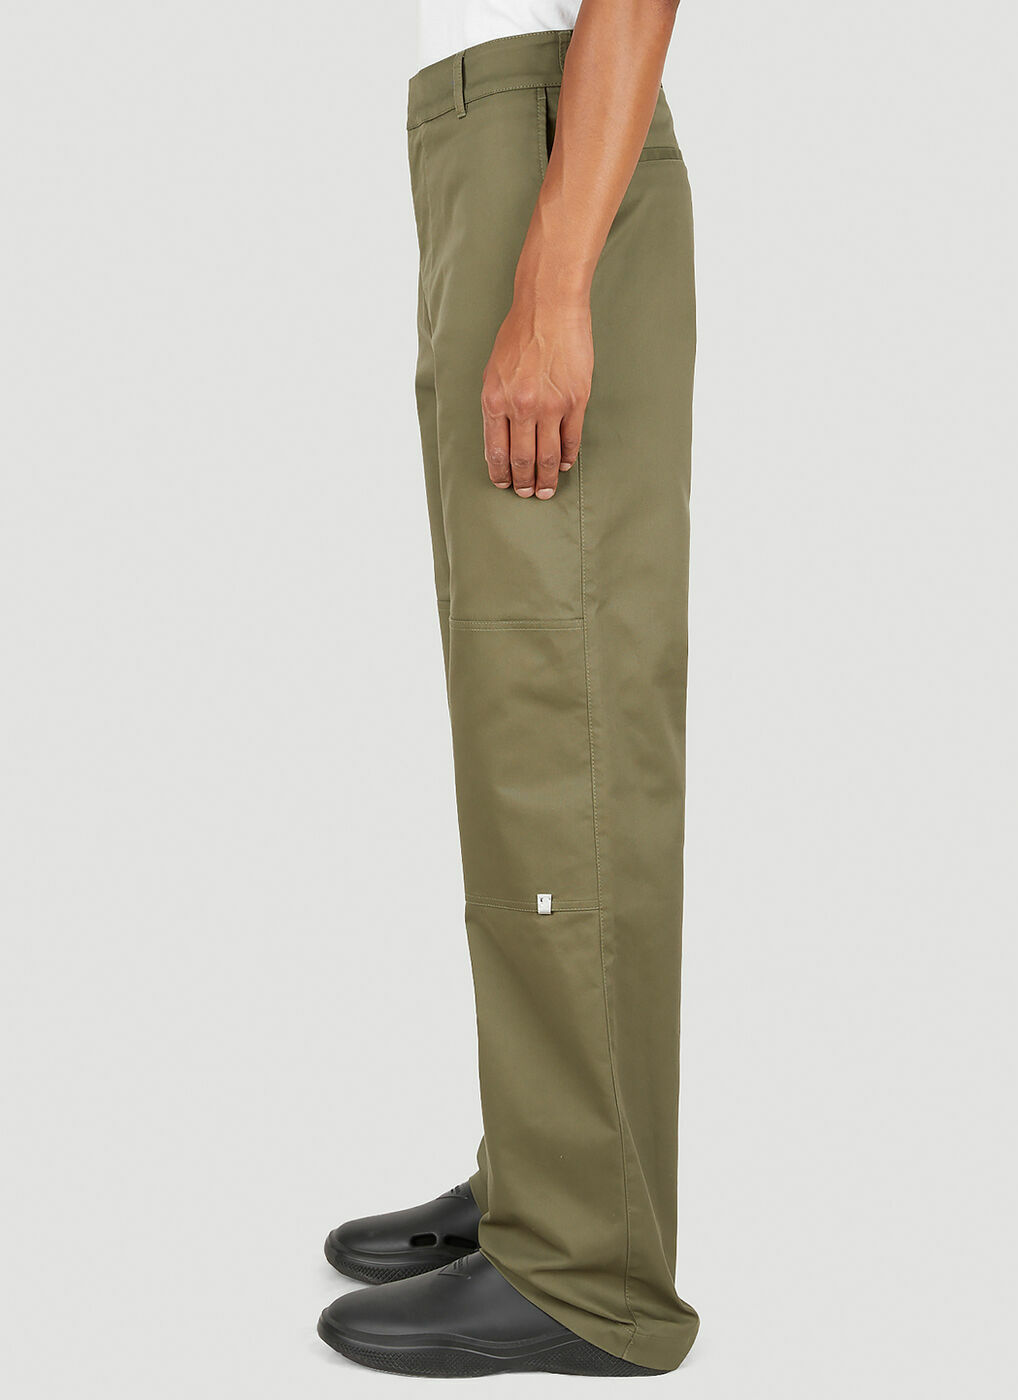 Lightercap Pants in Green